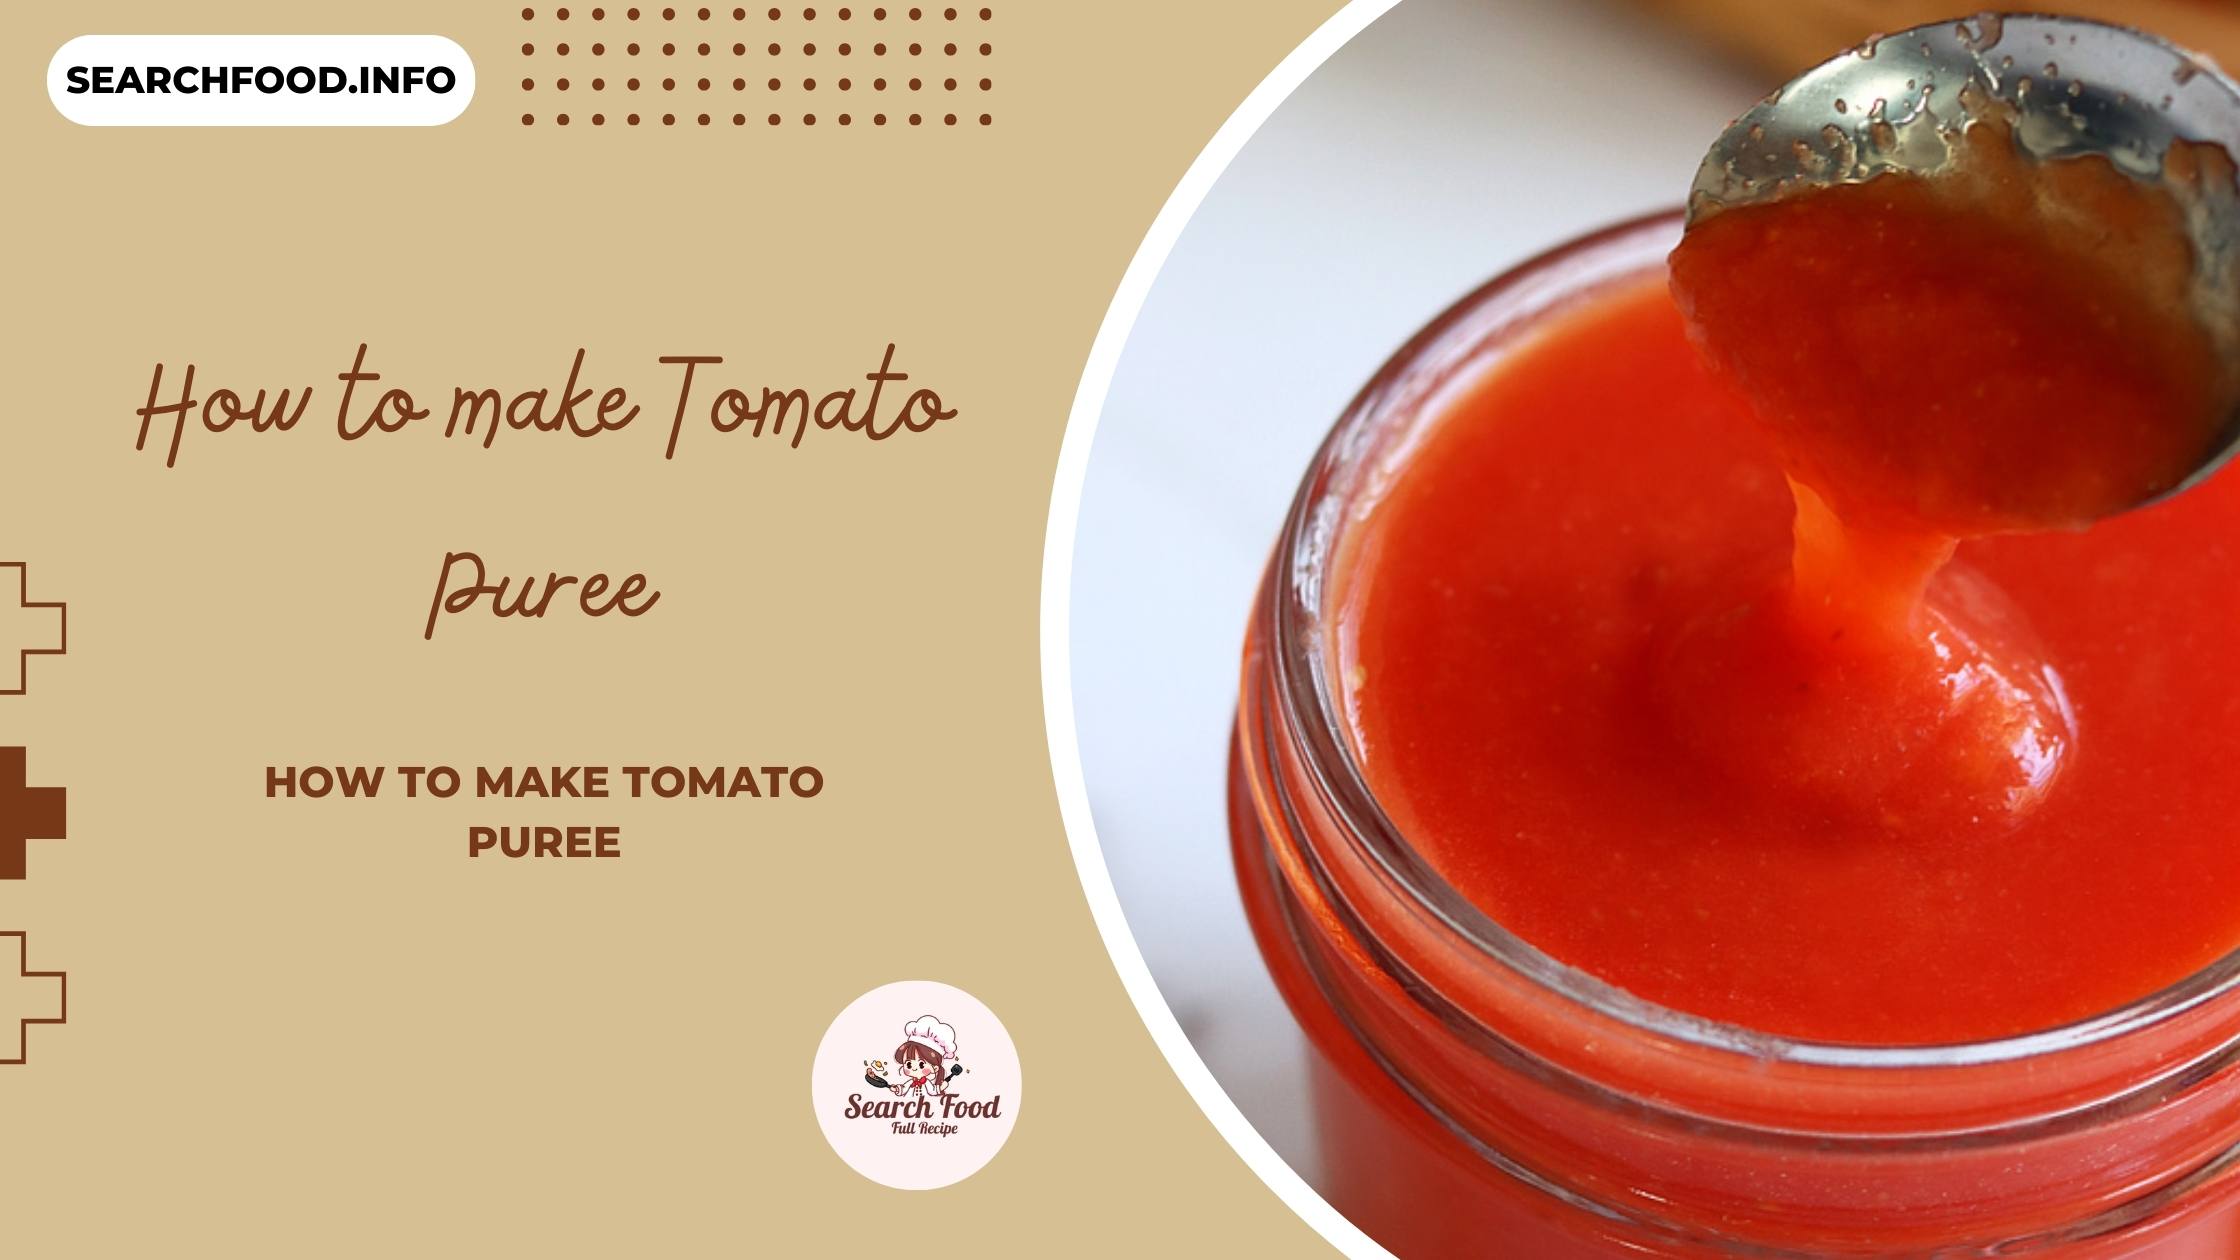 How to make Tomato Puree